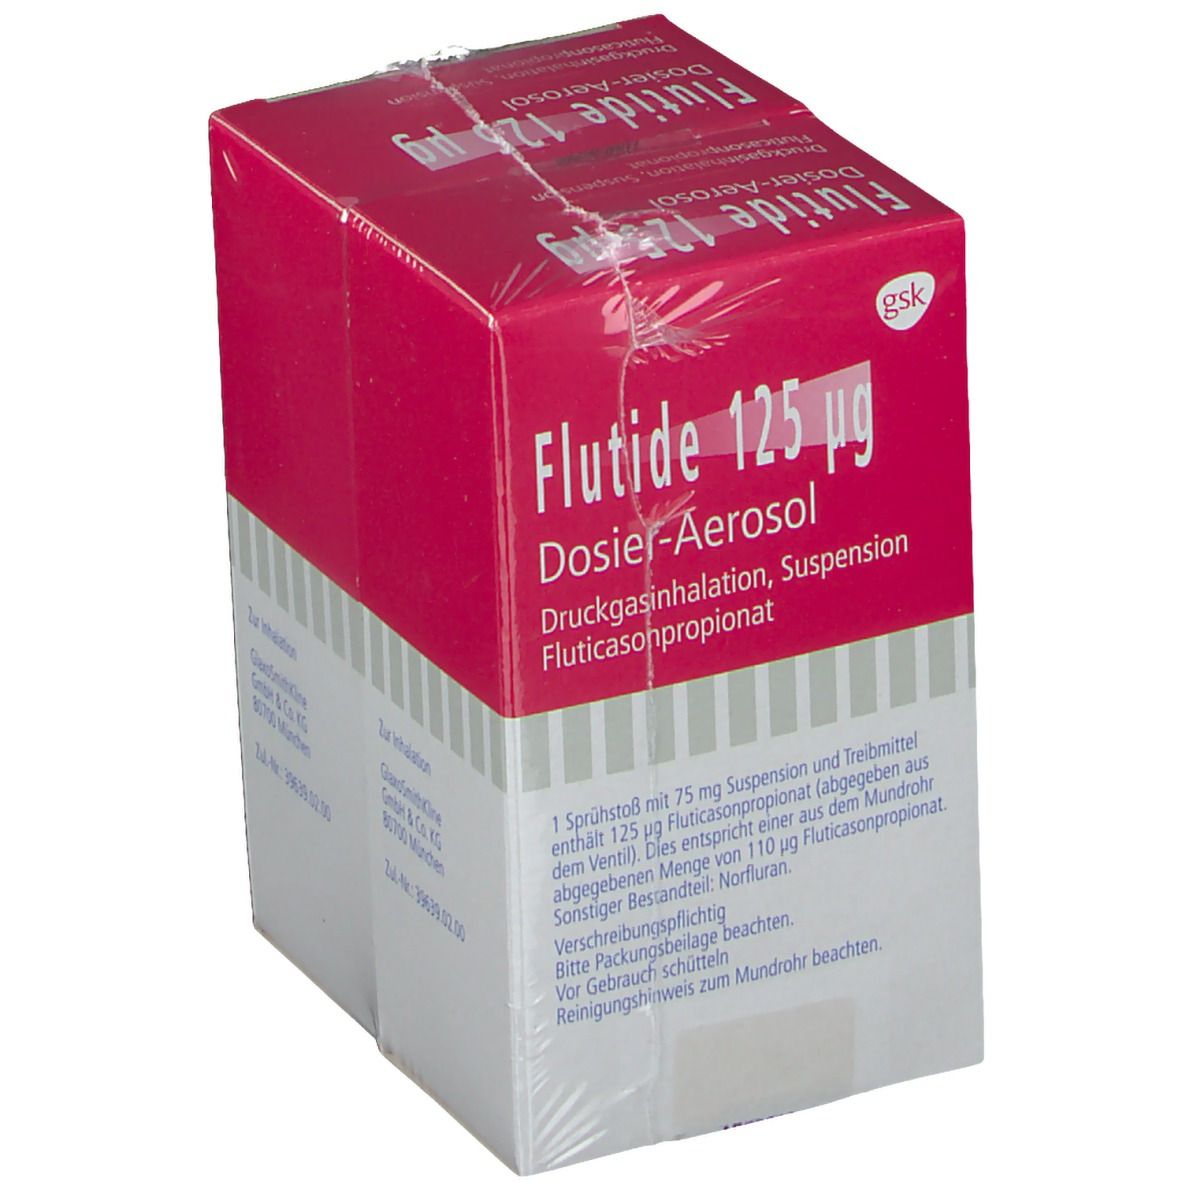 Flutide® 125 µg